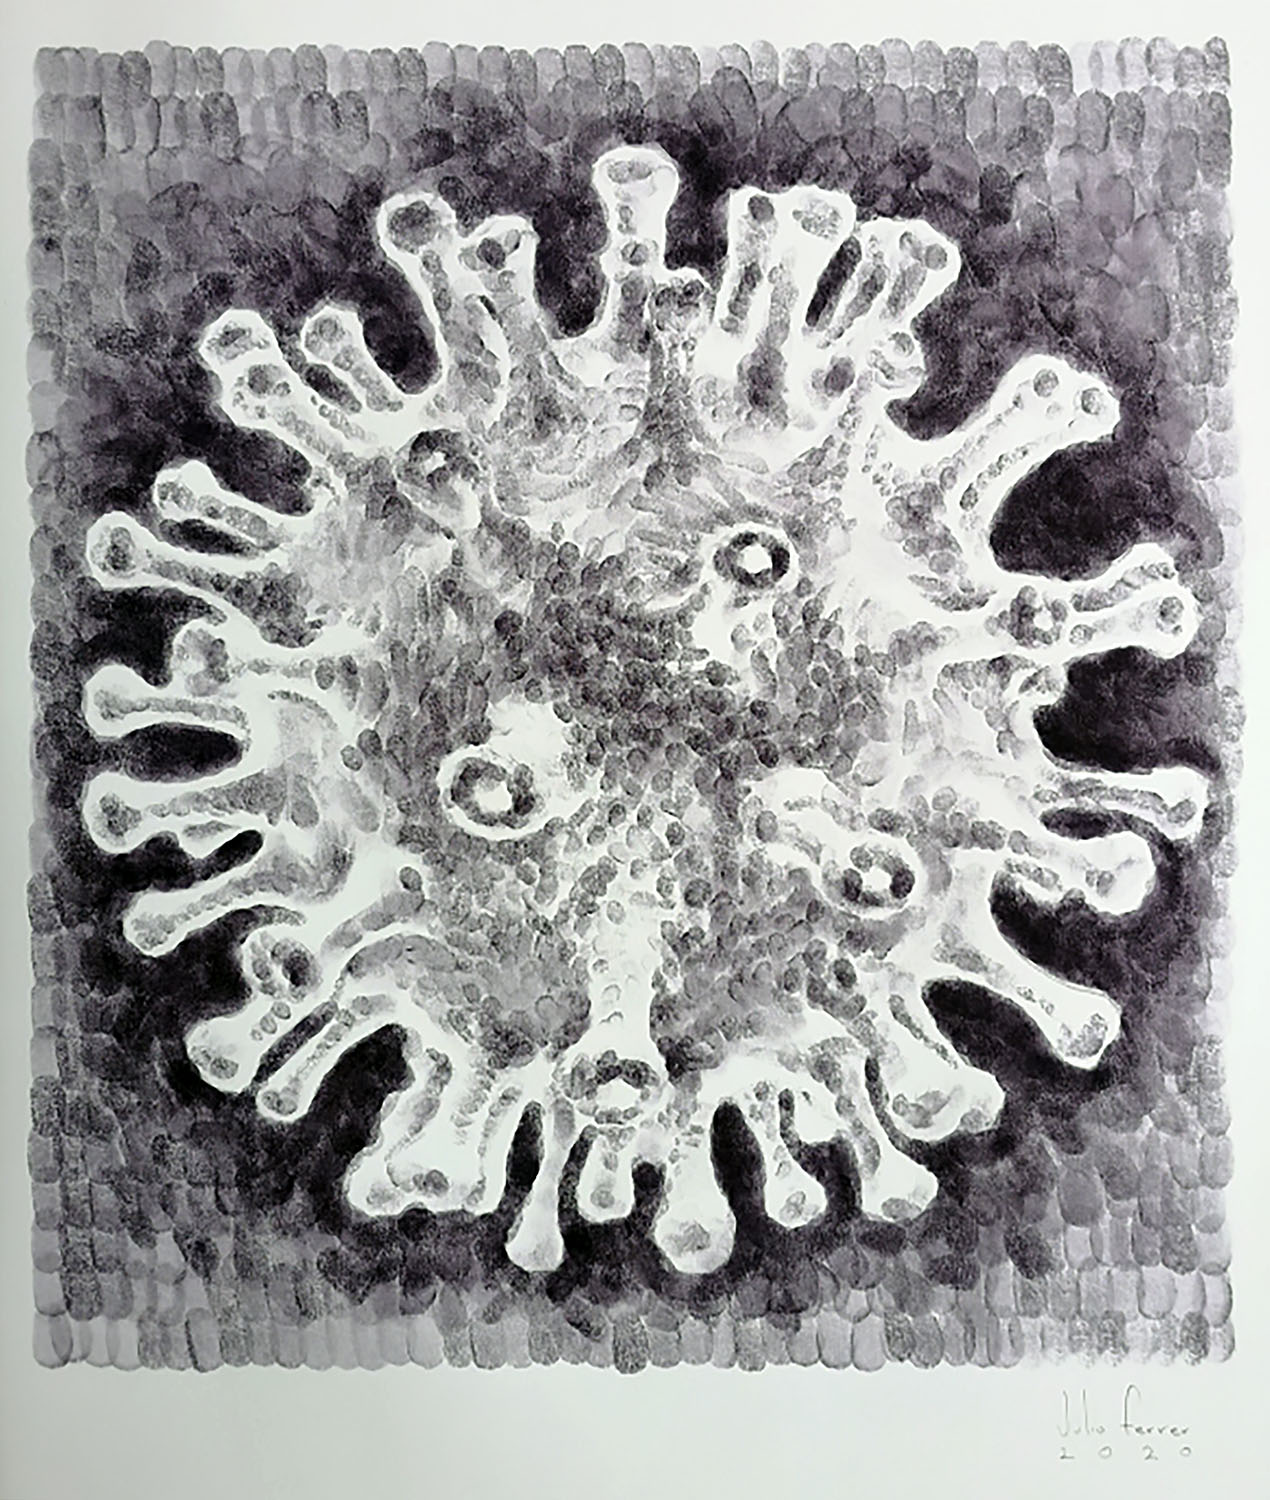 Julio Ferrer, March Outbreak 5 (Brote de marzo 5), Huellas digitales sobre cartulina, 76 x 55 cm, obra presente en la muestra.